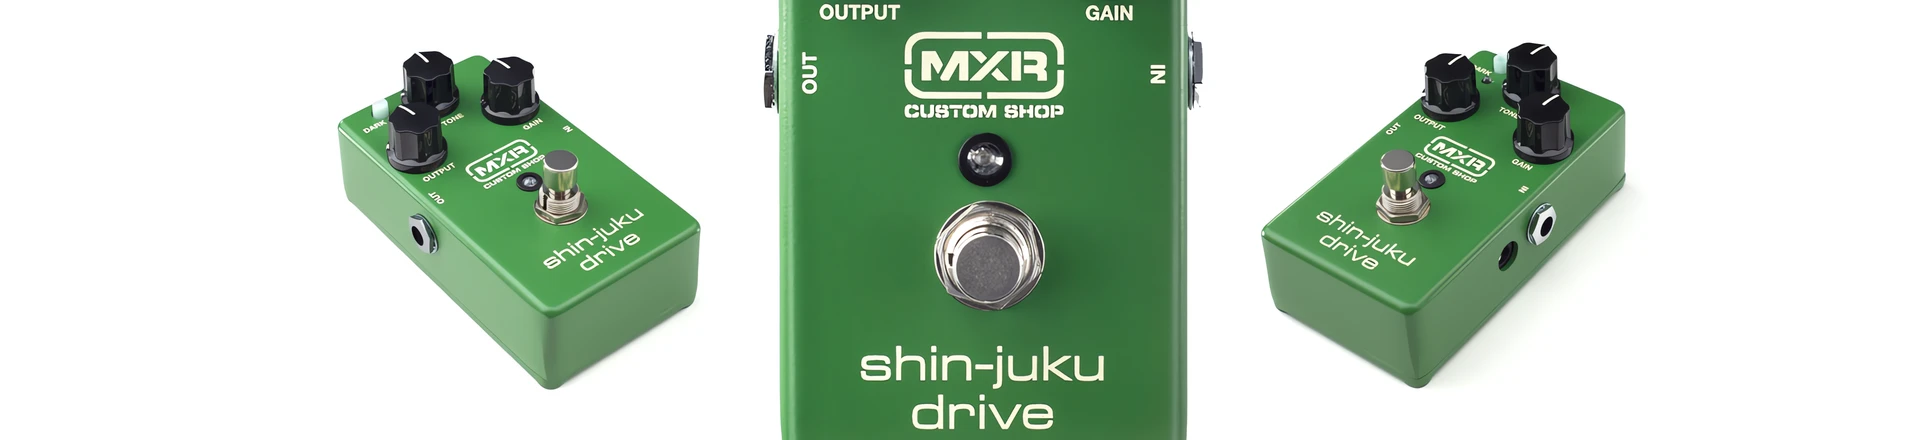 Kostka MXR Custom Shop Shin-Juku Drive